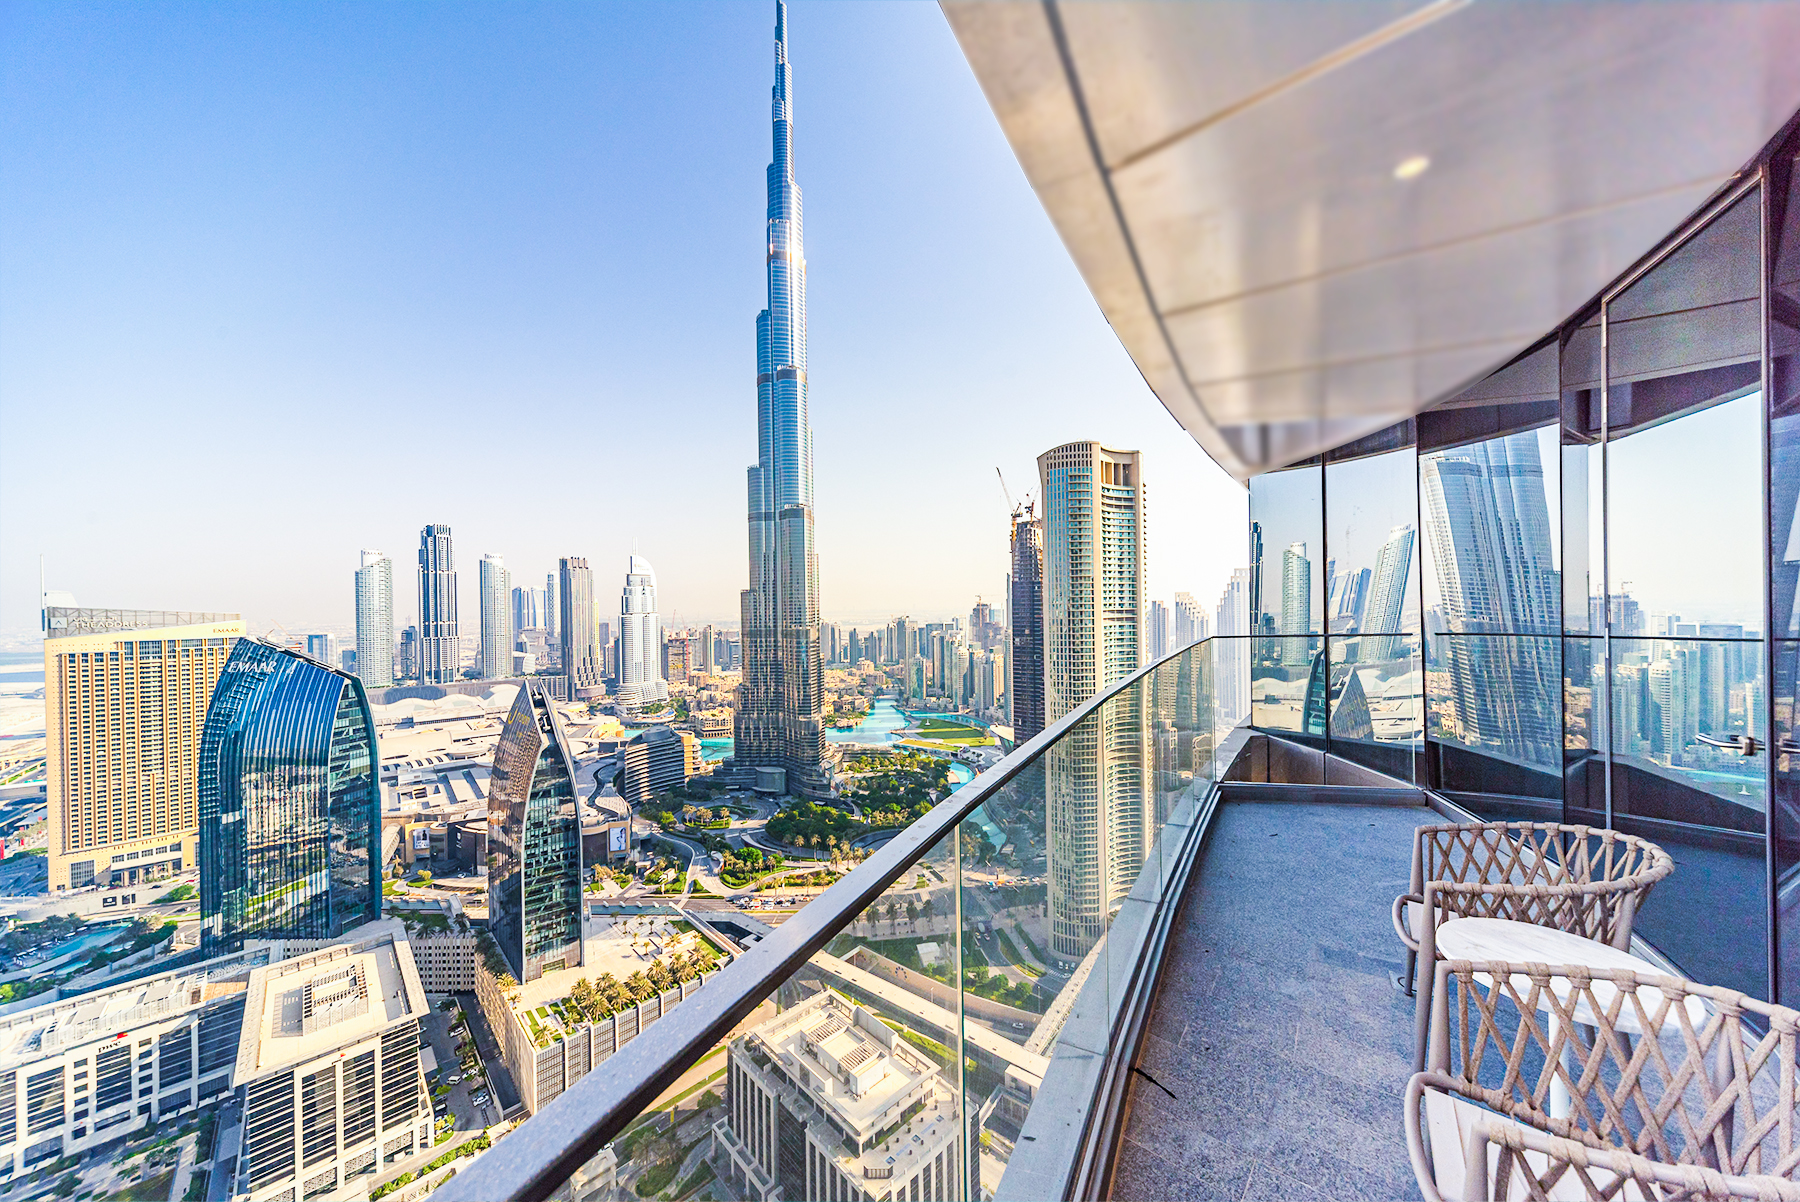 Burj Khalifa named the world most popular landmark